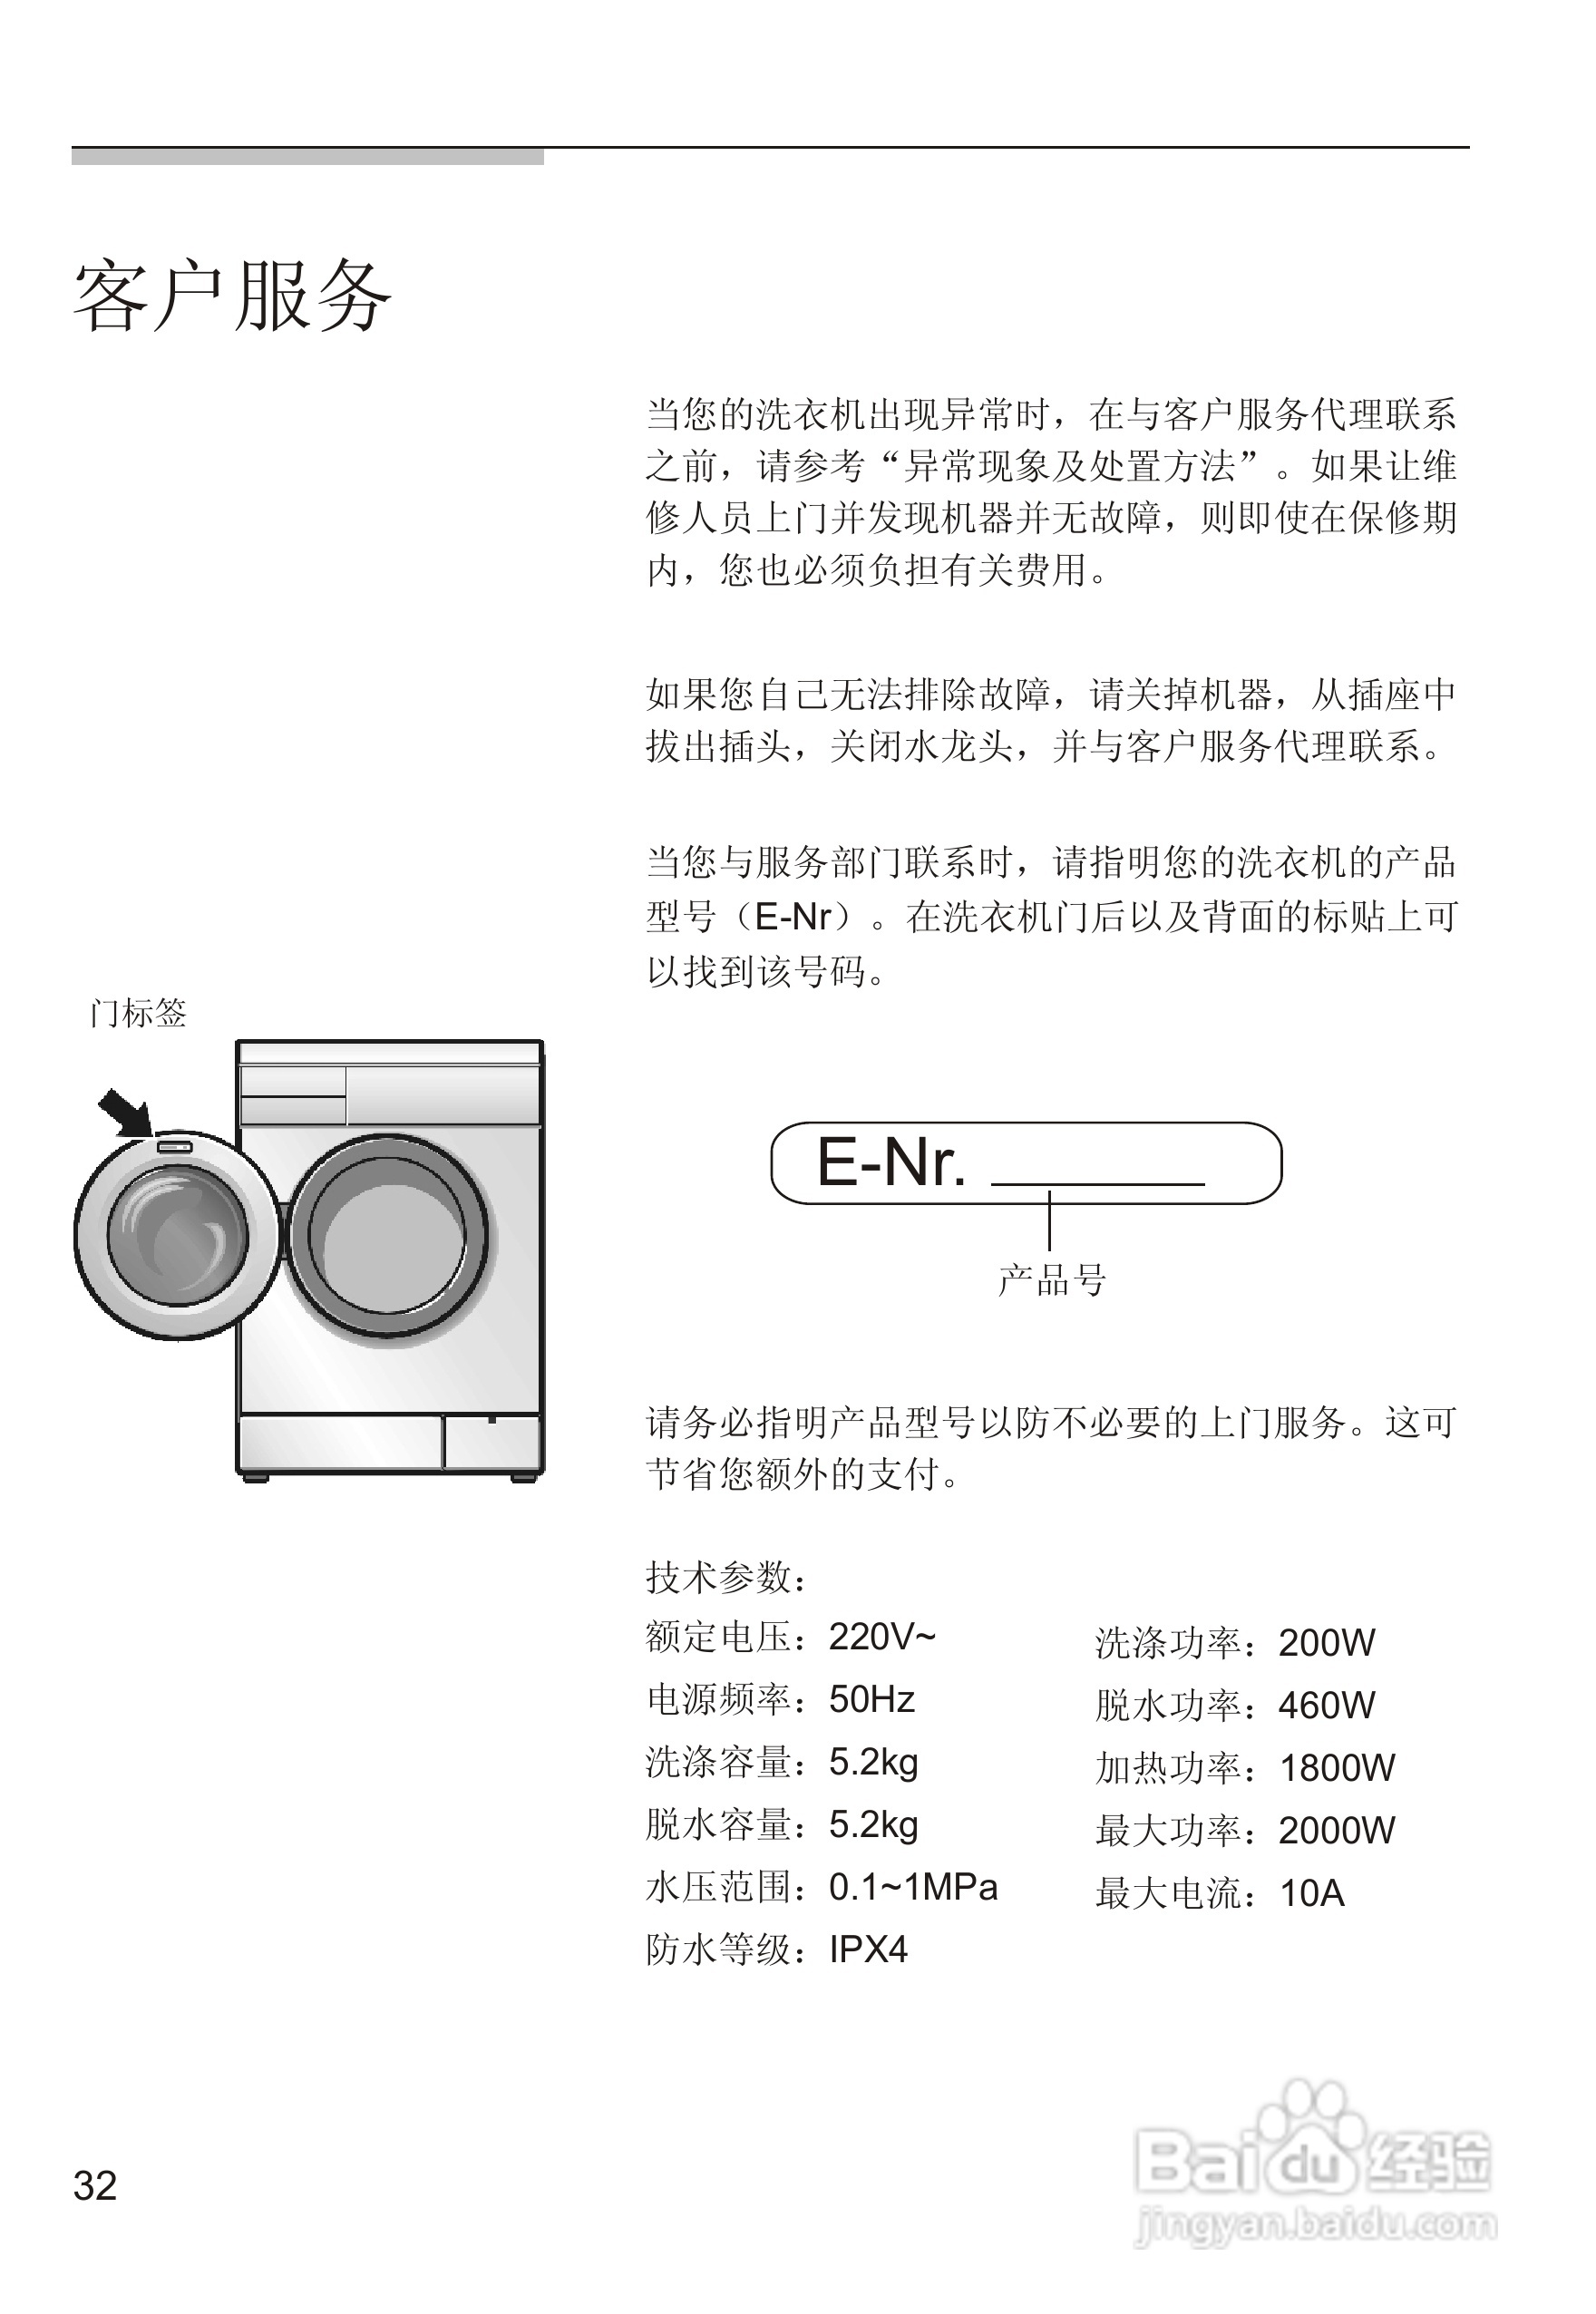 西门子wm605 洗衣机说明书:[4]